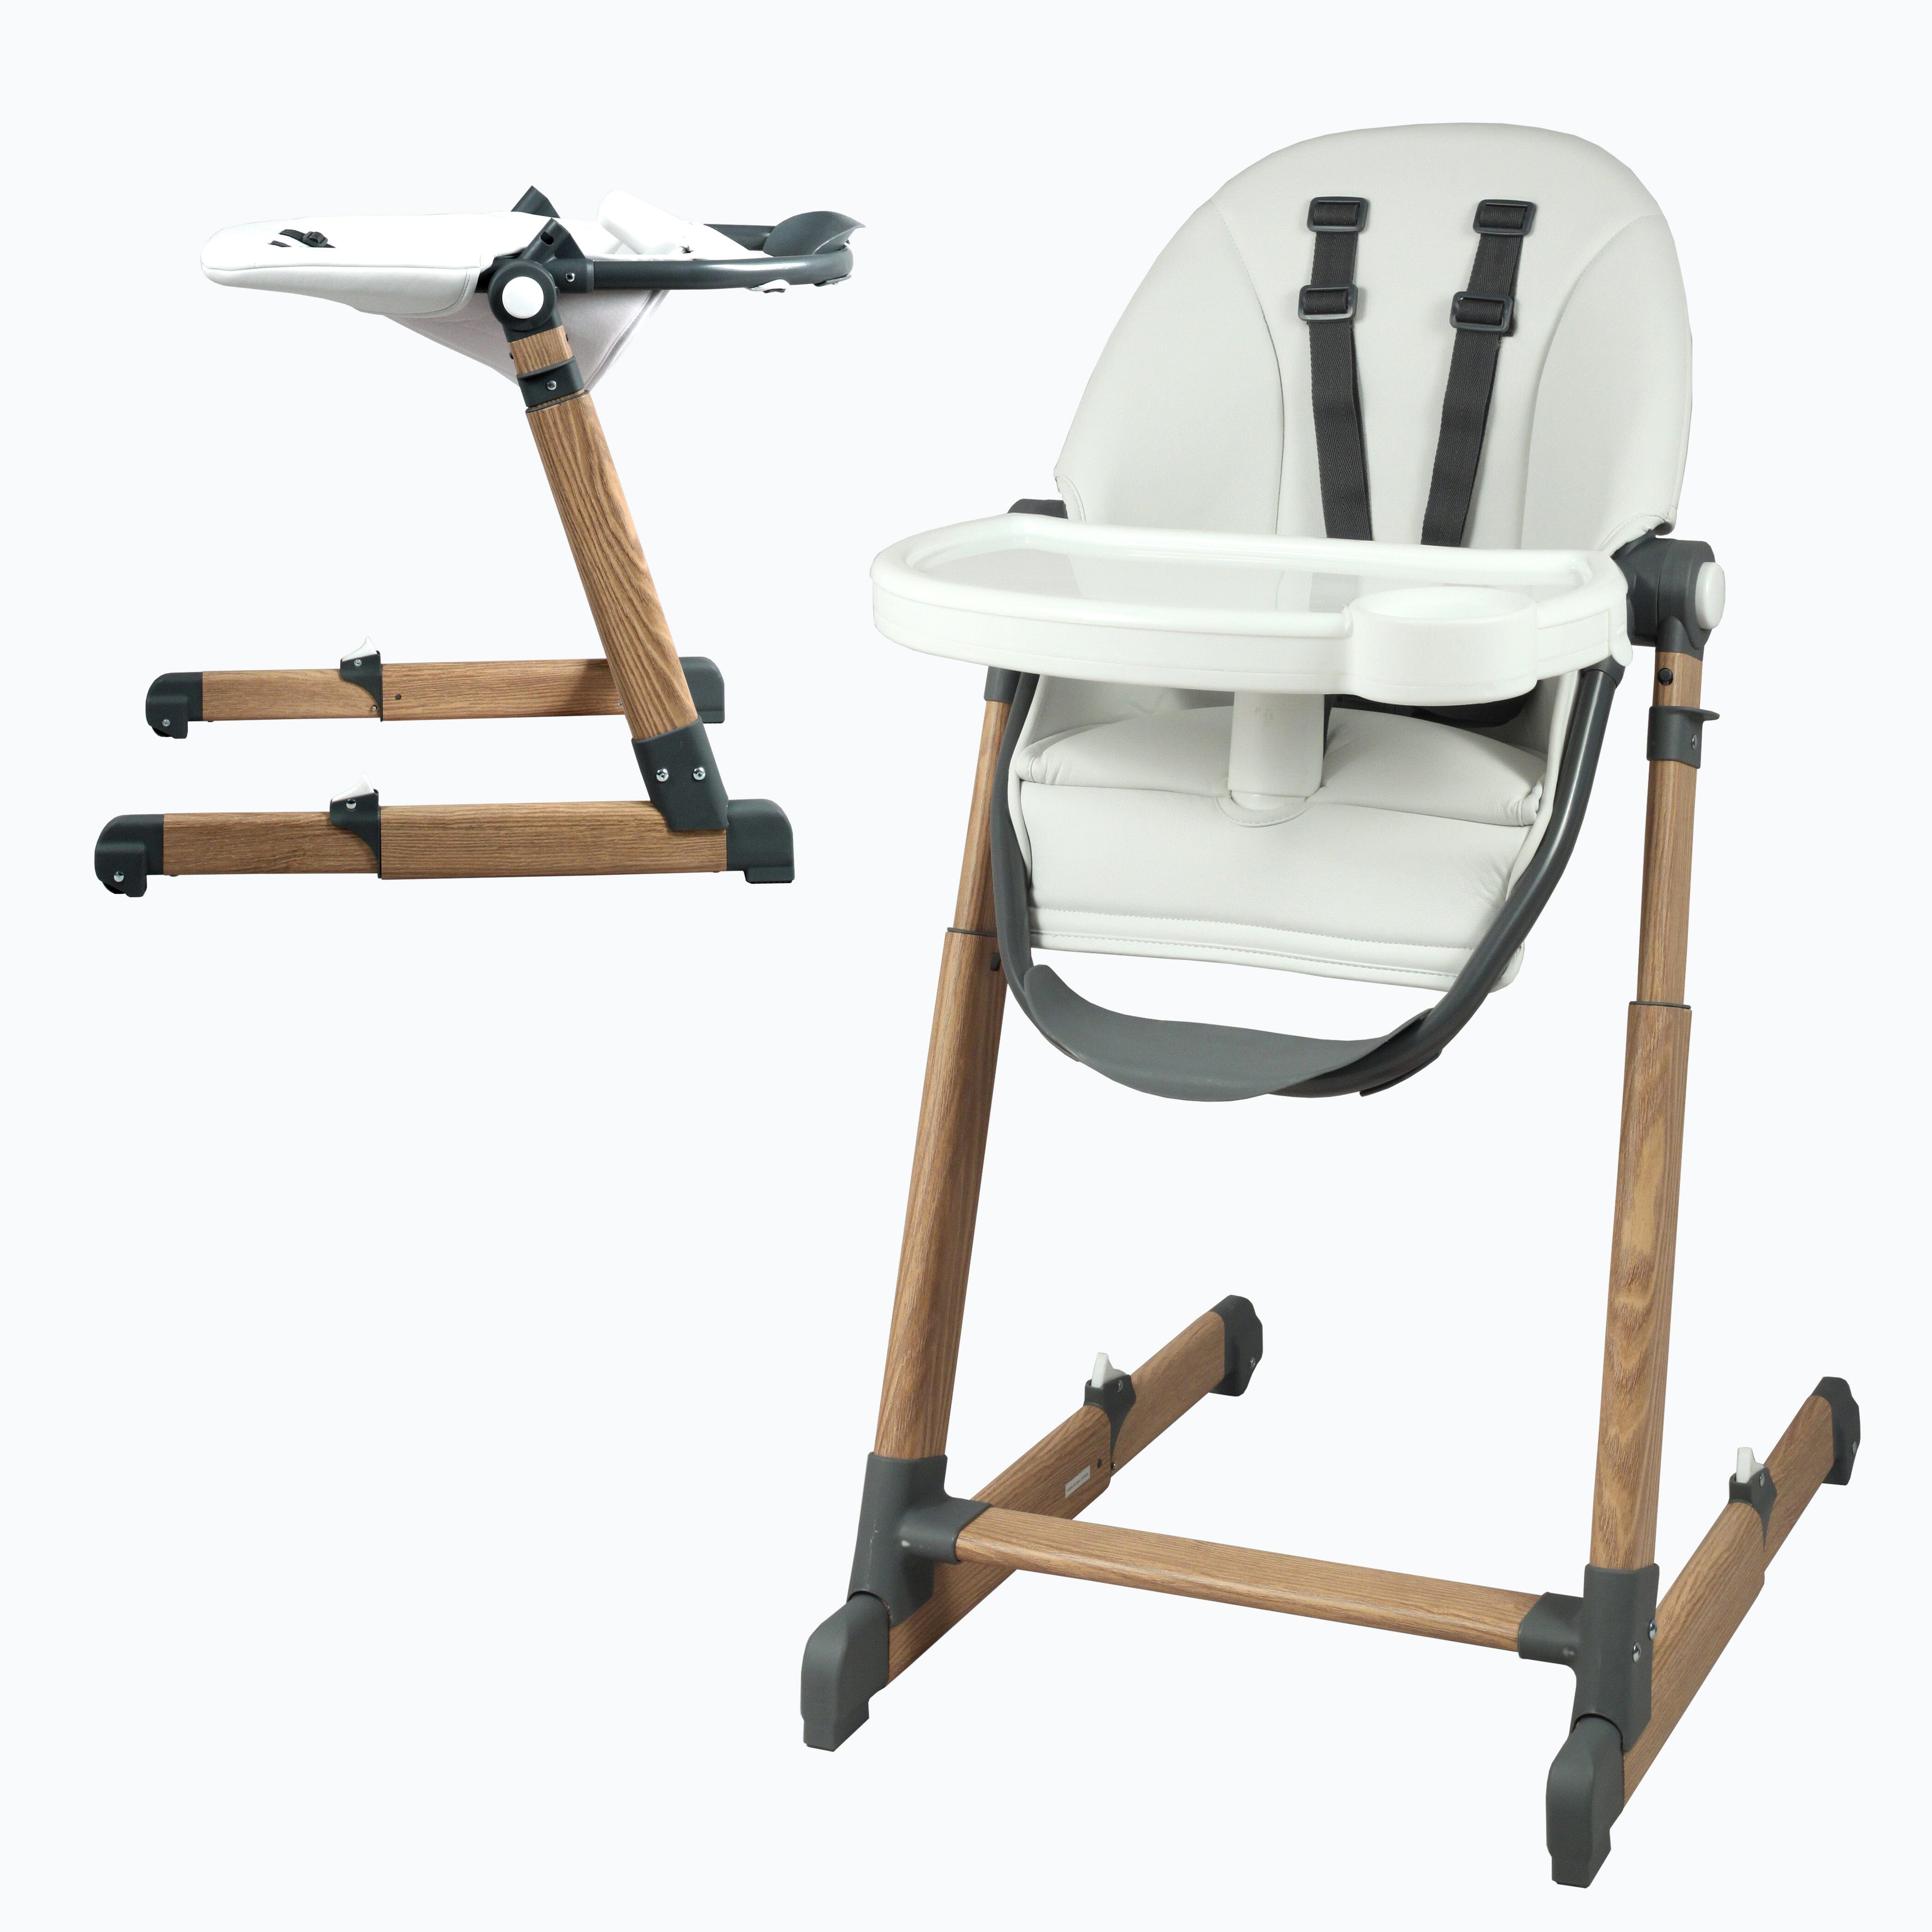 La chaise haute et le siège de table de bébé : comment bien les